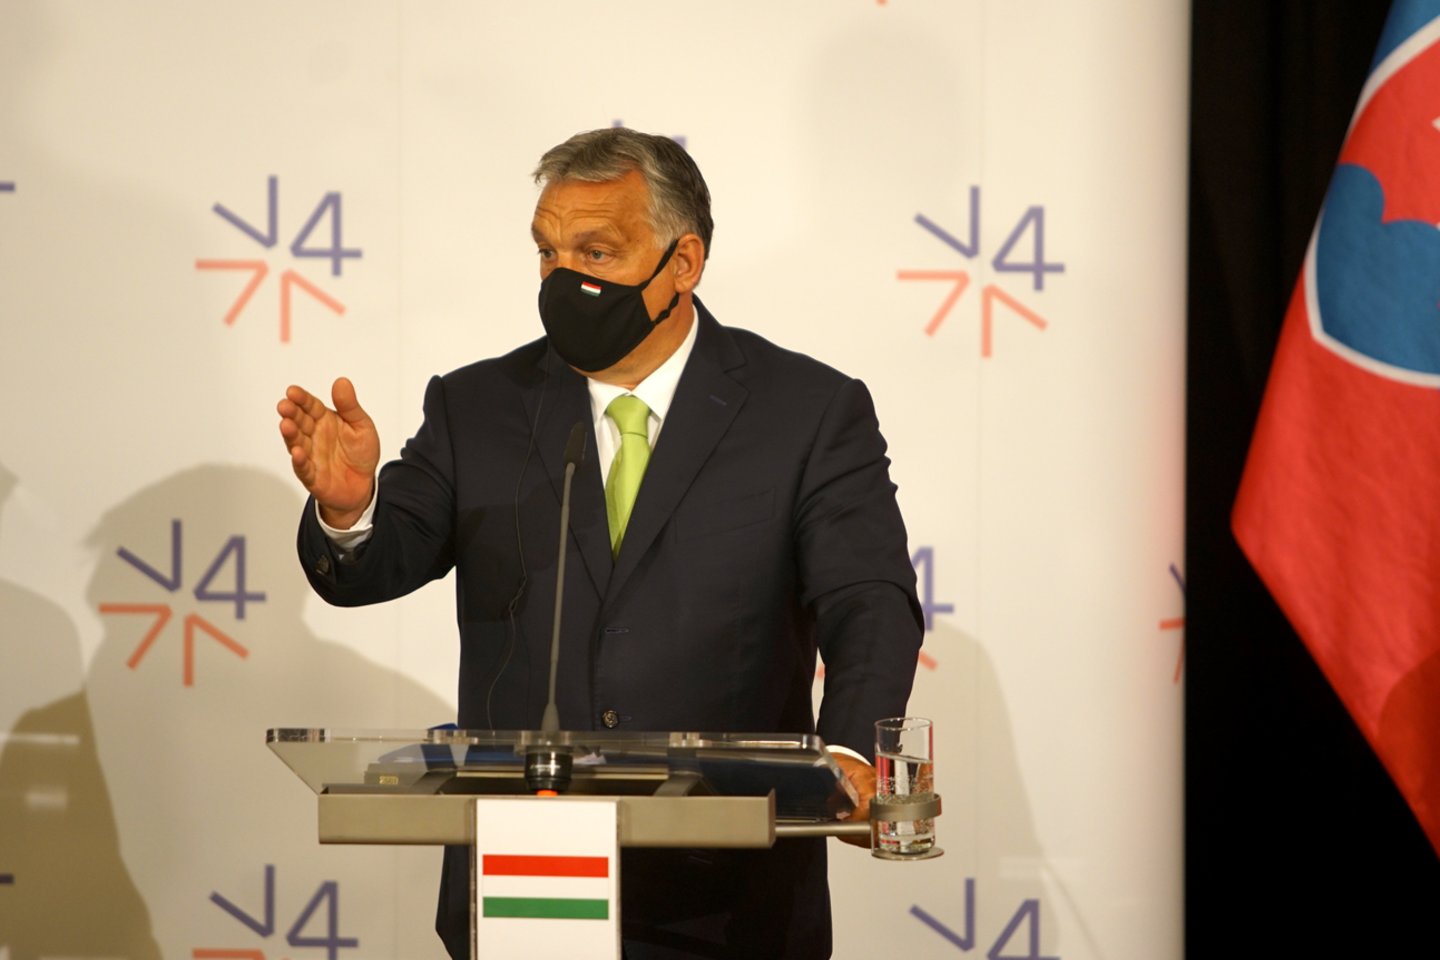  Anksčiau šį mėnesį premjeras Viktoras Orbanas pareiškė, kad Vengrija dėl pavojaus sveikatai nesilaikys ES rekomendacijos atšaukti apribojimus keliautojams iš daugiau Bendrijai nepriklausančių šalių.  <br> ZumaPress/Scanpix nuotr.